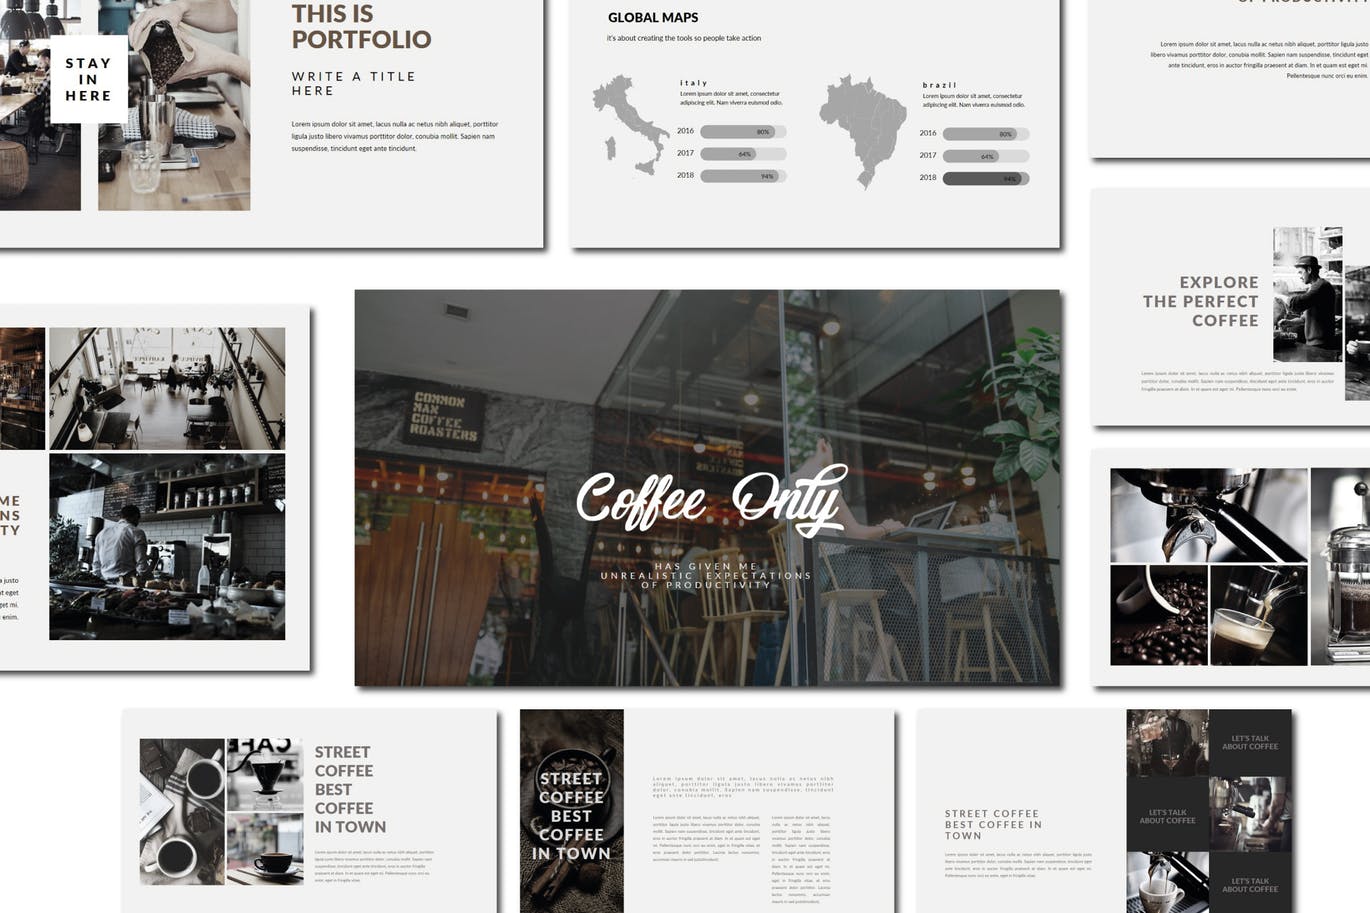 咖啡品牌/咖啡店策划方案第一素材精选PPT模板 Coffee | Powerpoint Template插图